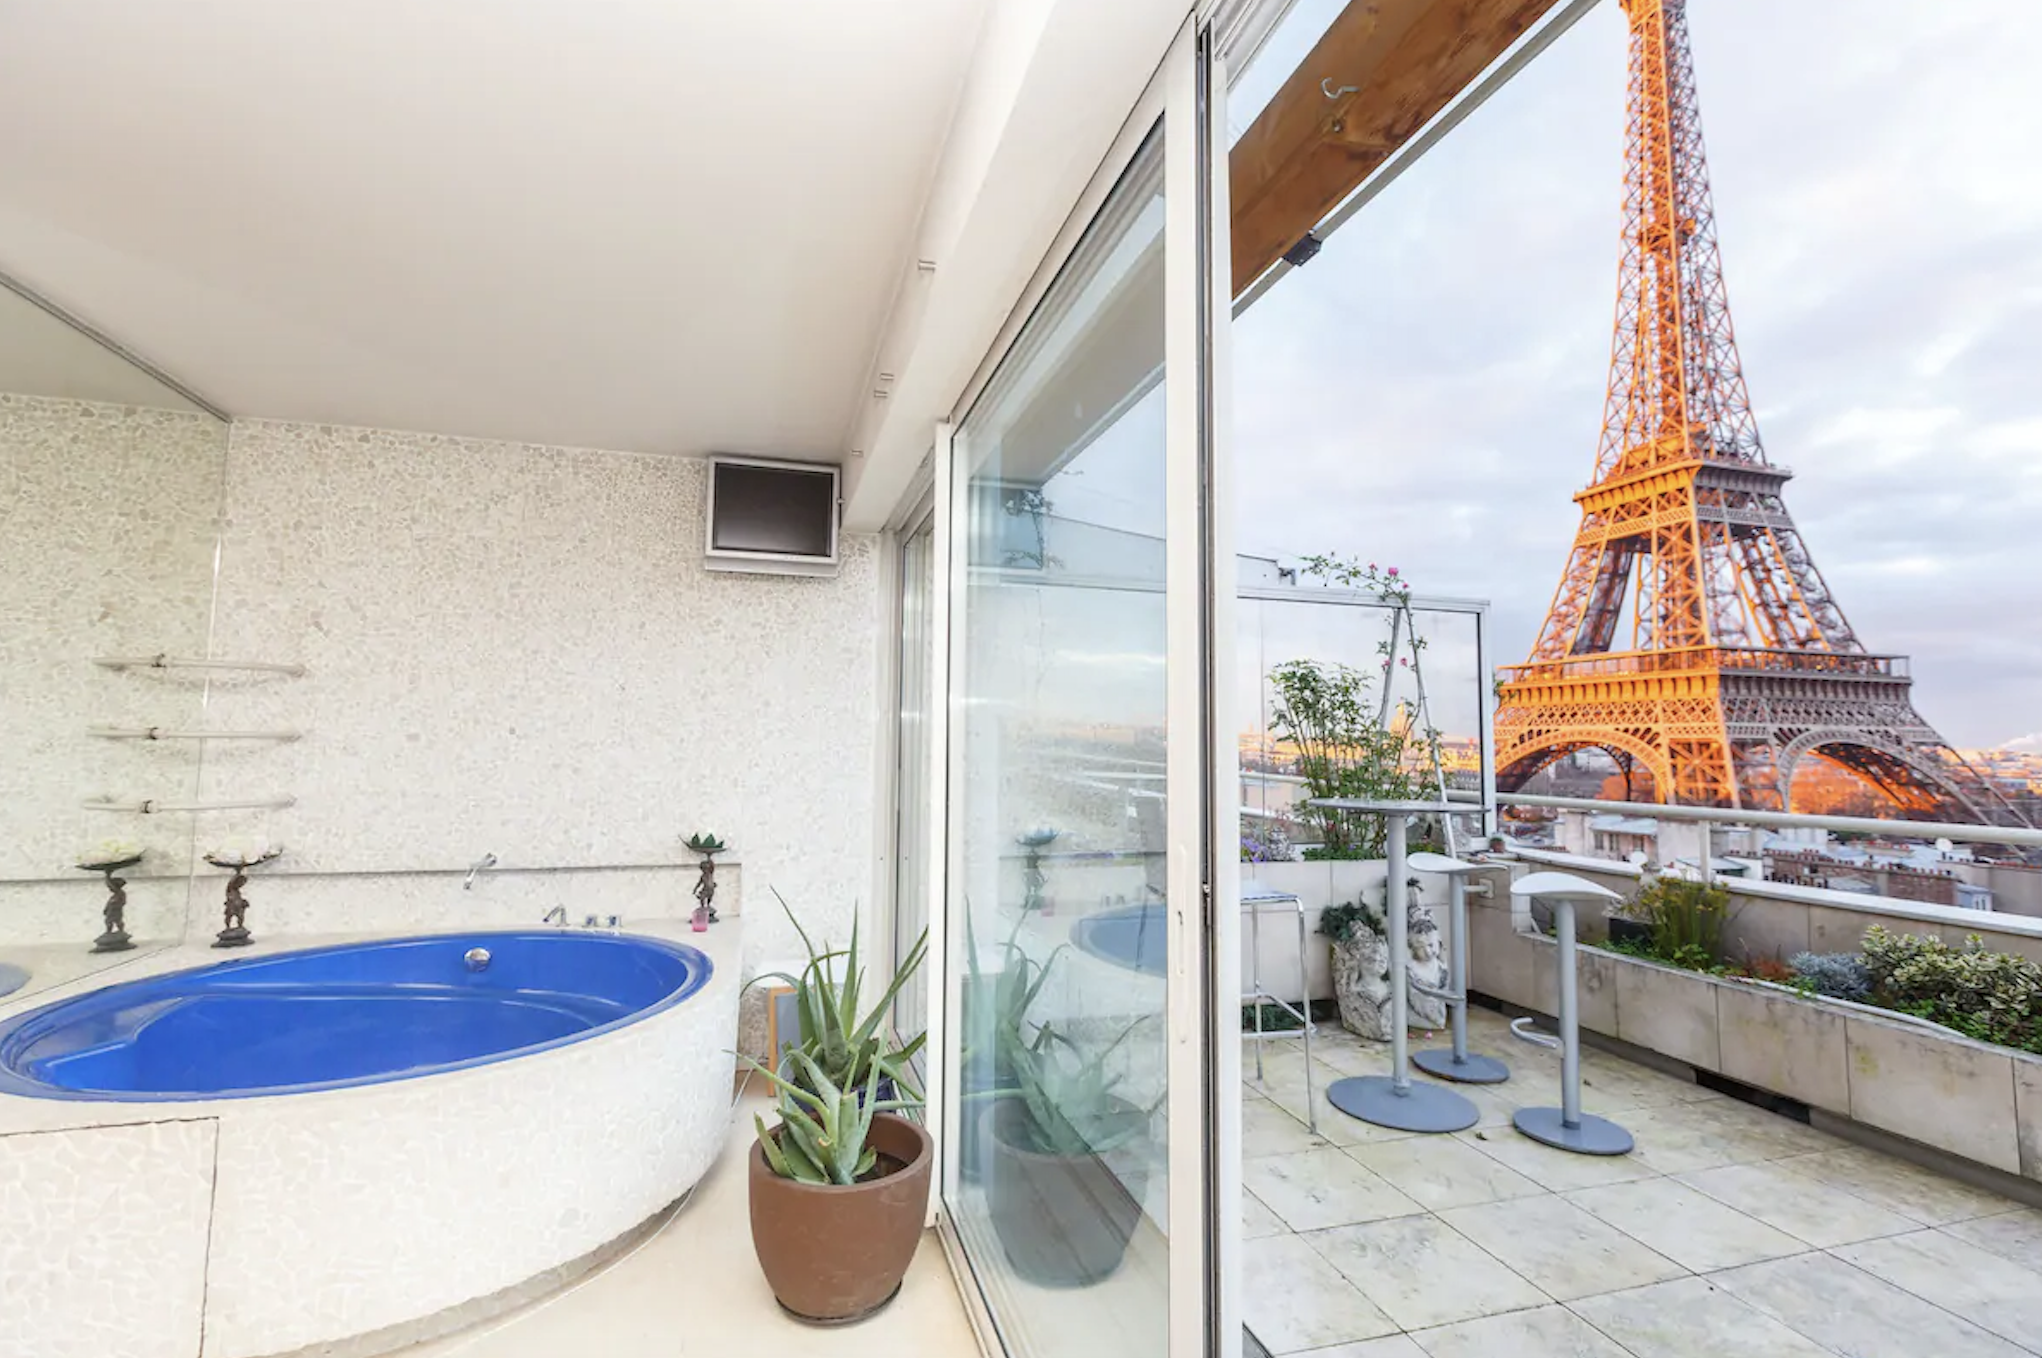 Penthouse Loft Paris Airbnb view of Eiffel Tower